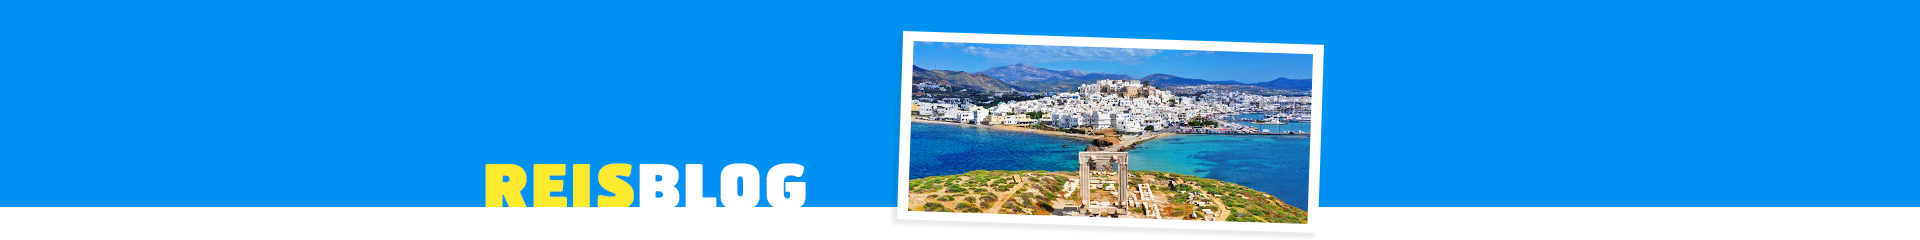 Witte huizen en helderblauw water op Naxos, Griekenland